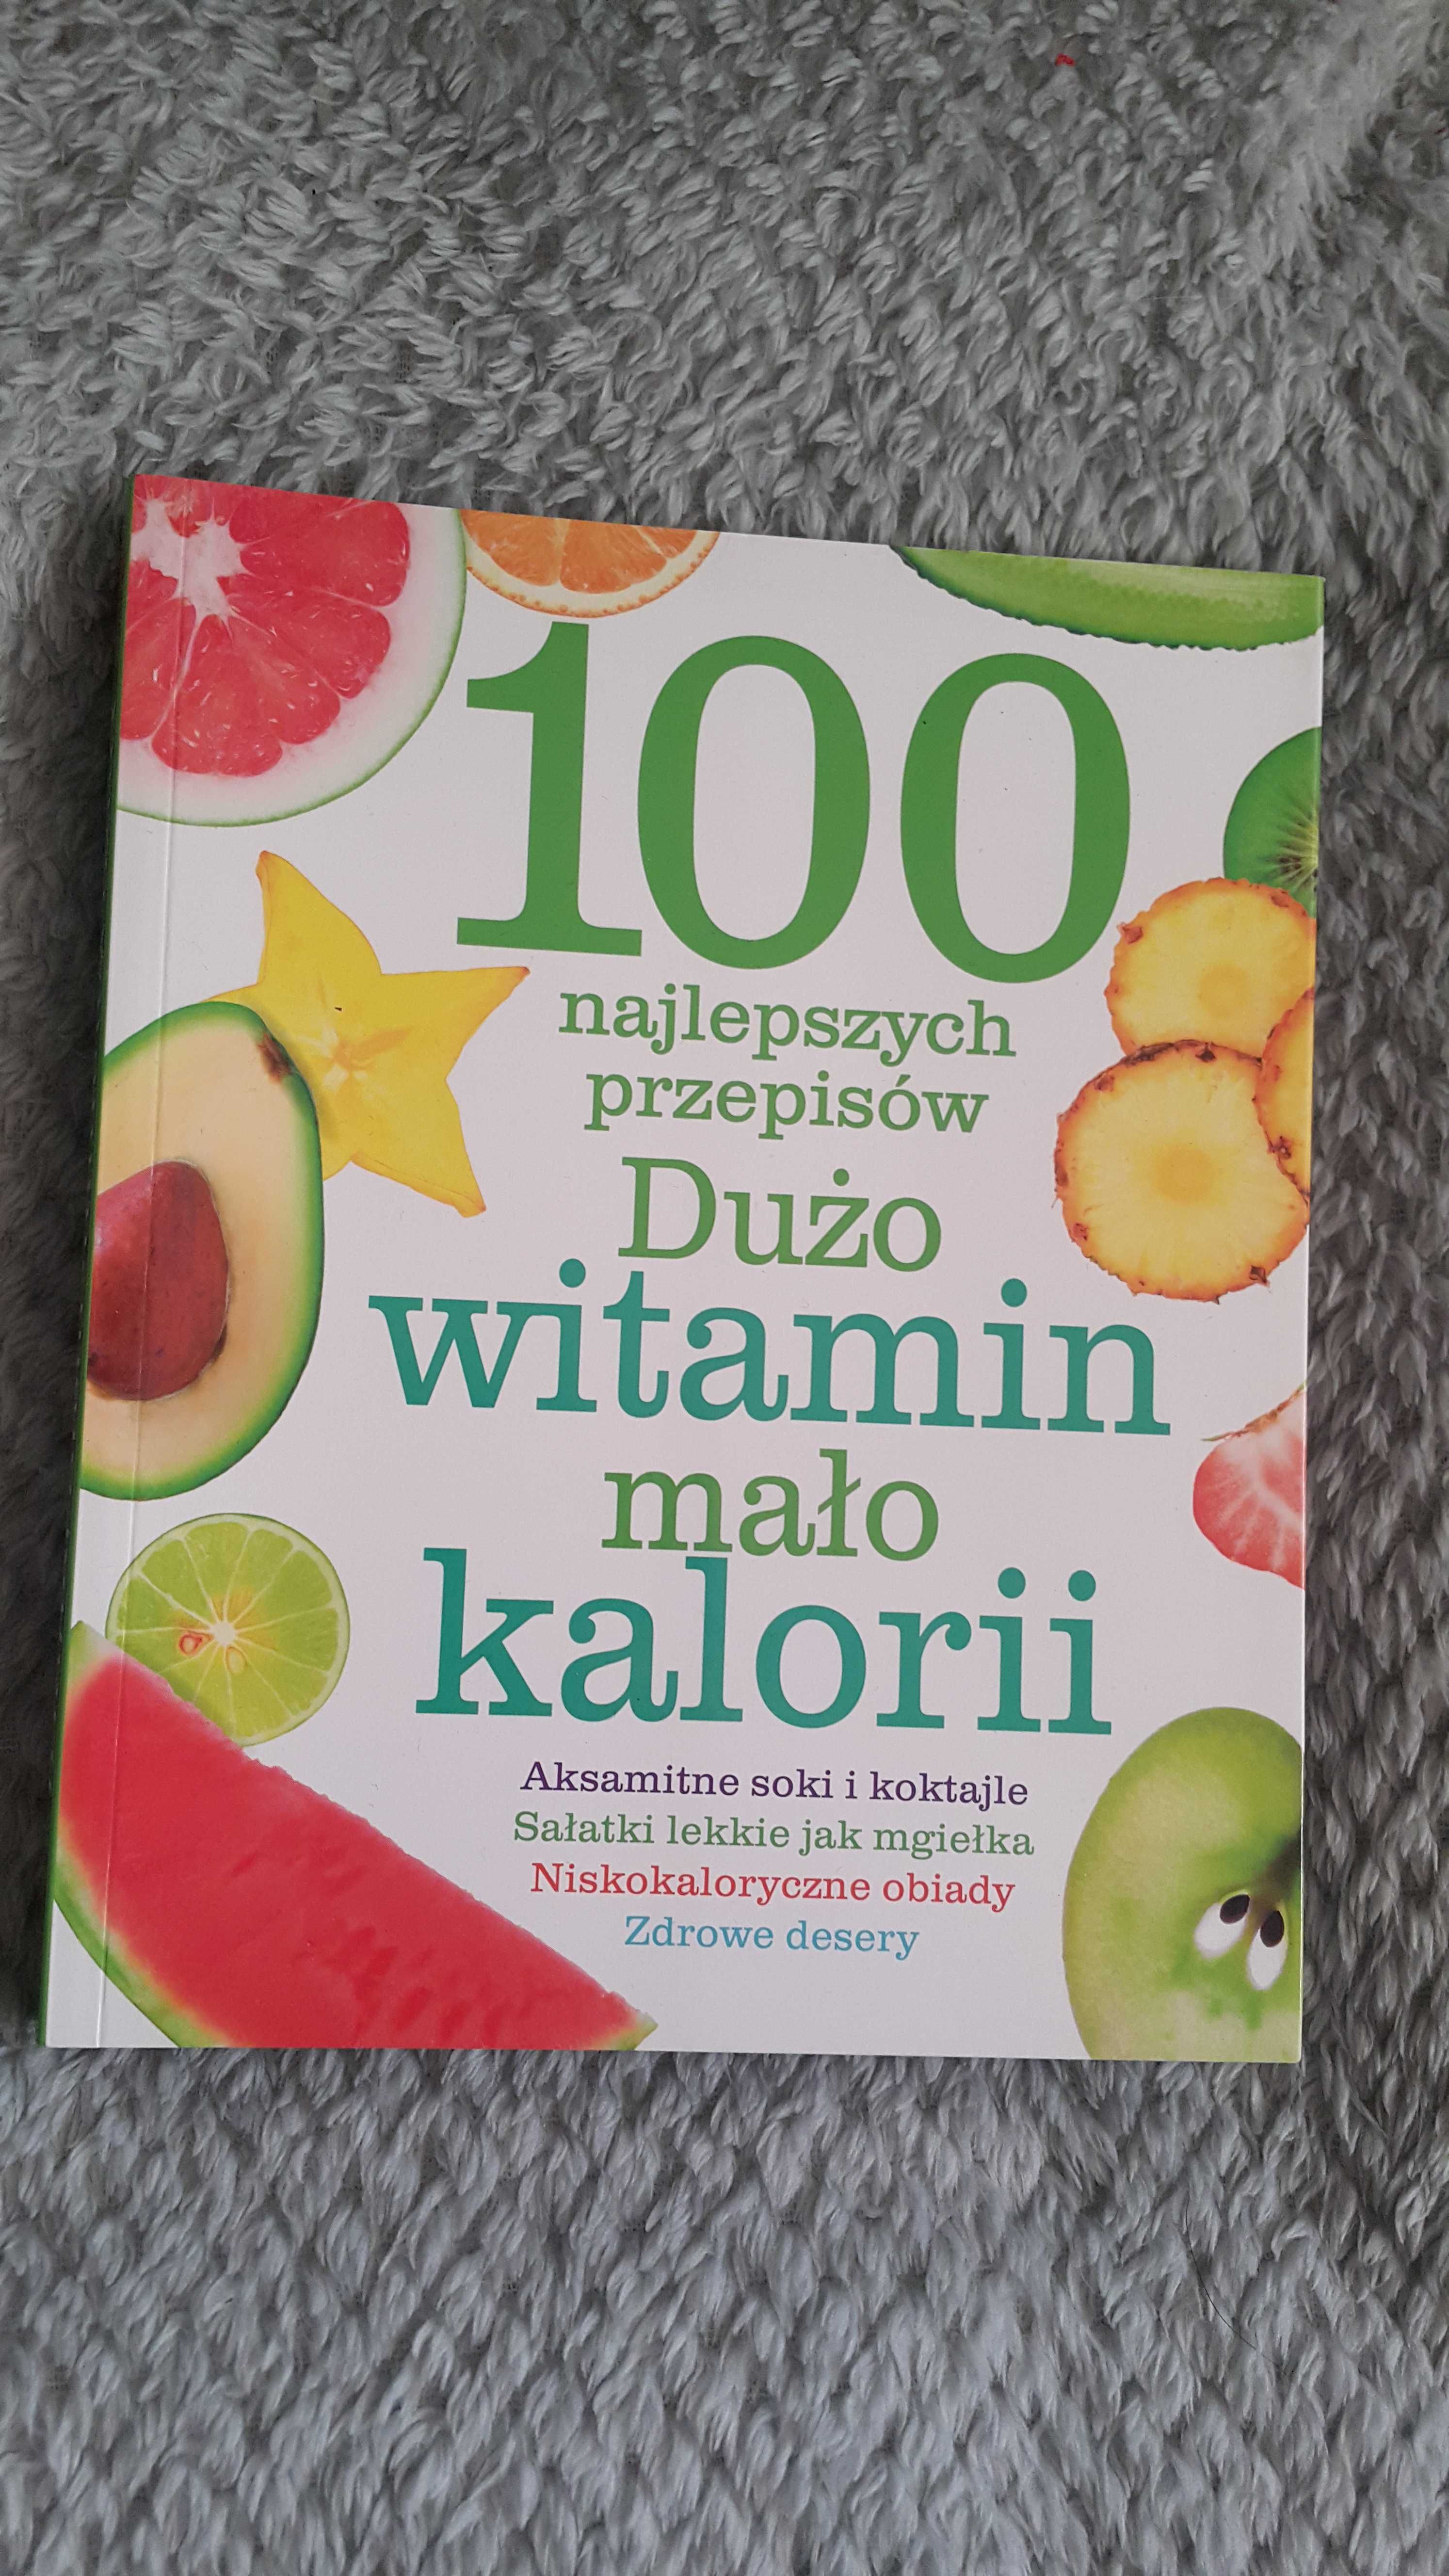 Książka 100 najlepszych przepisów,dużo witamin mało kalorii.